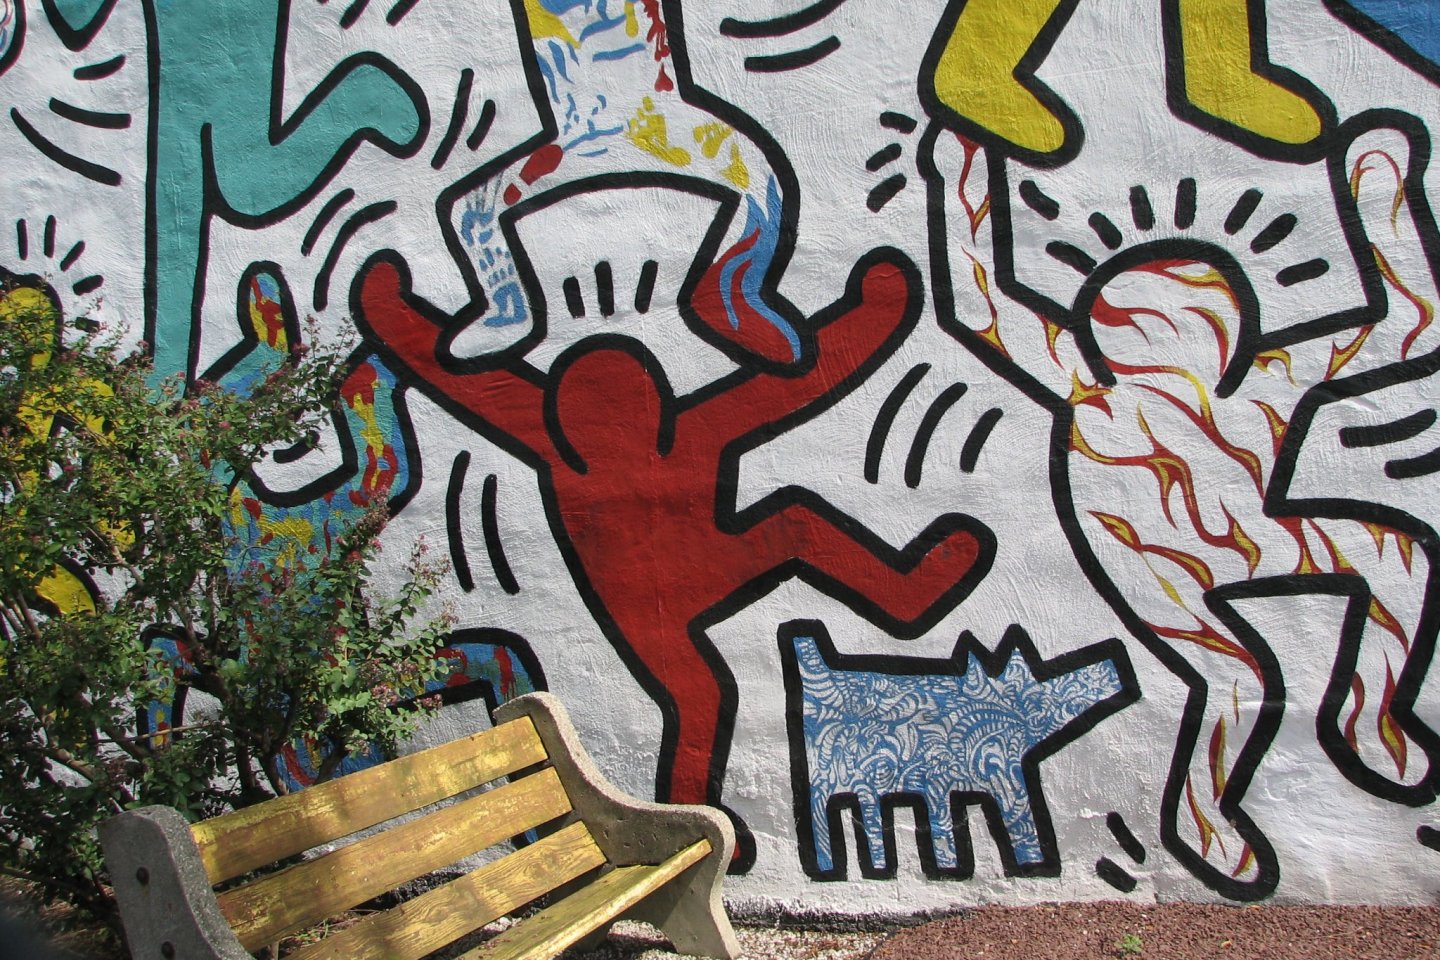 Keith Haring: Nghệ thuật trên đường phố.